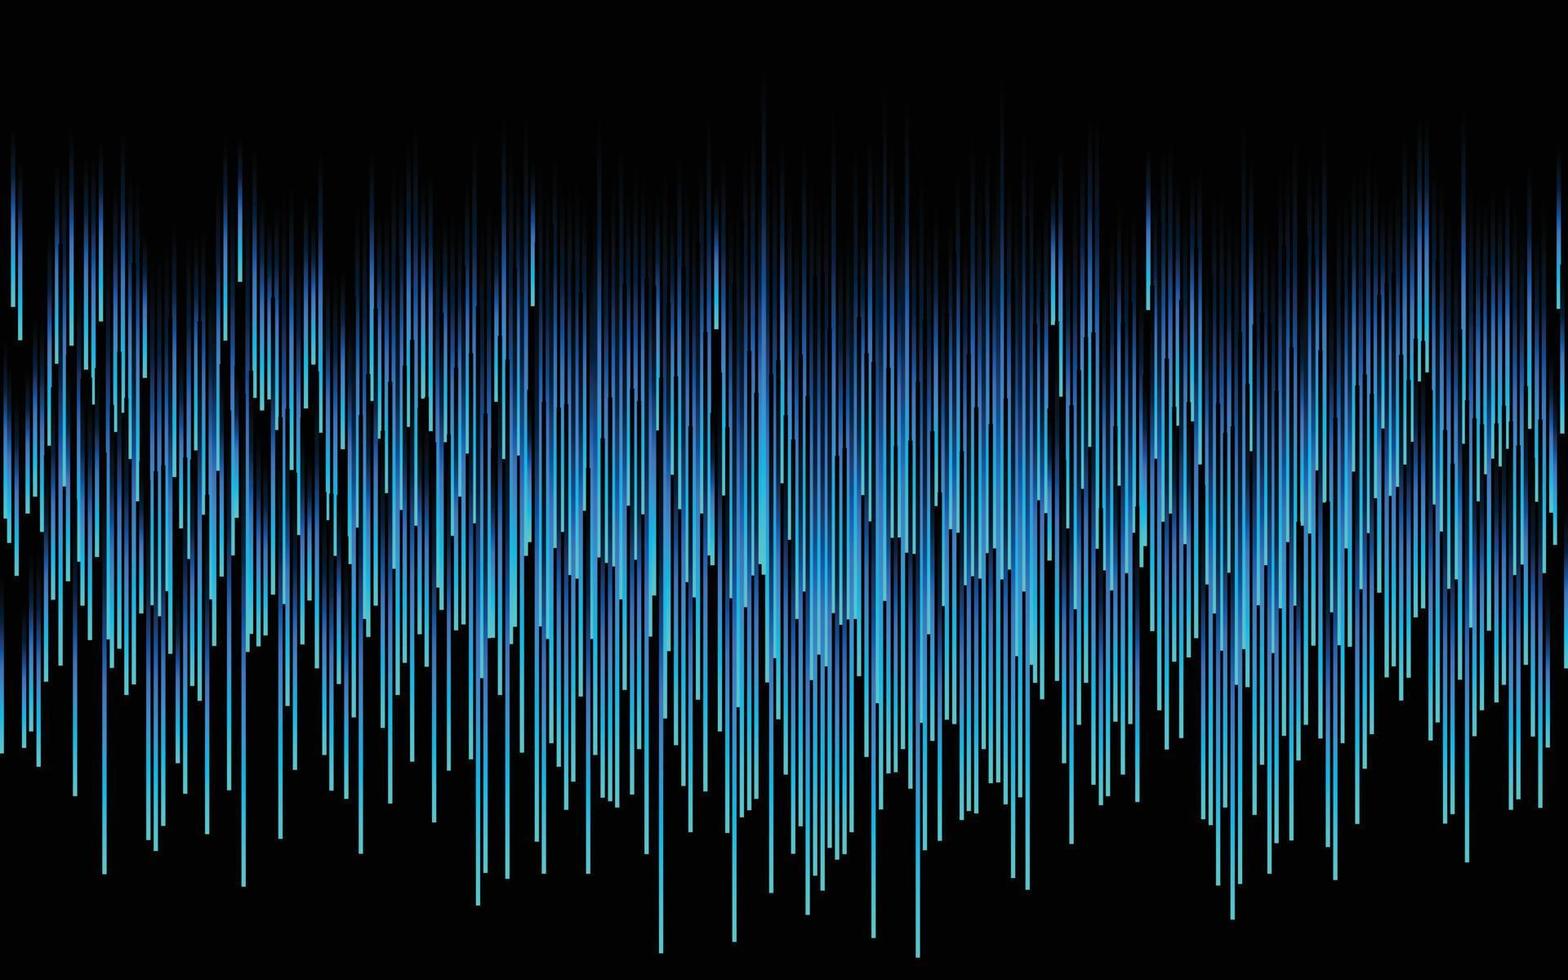 Vektor Halbkreise Digitaltechnik ai Linien fließende dynamische Muster in blaugrünen Farben isoliert auf schwarzem Hintergrund